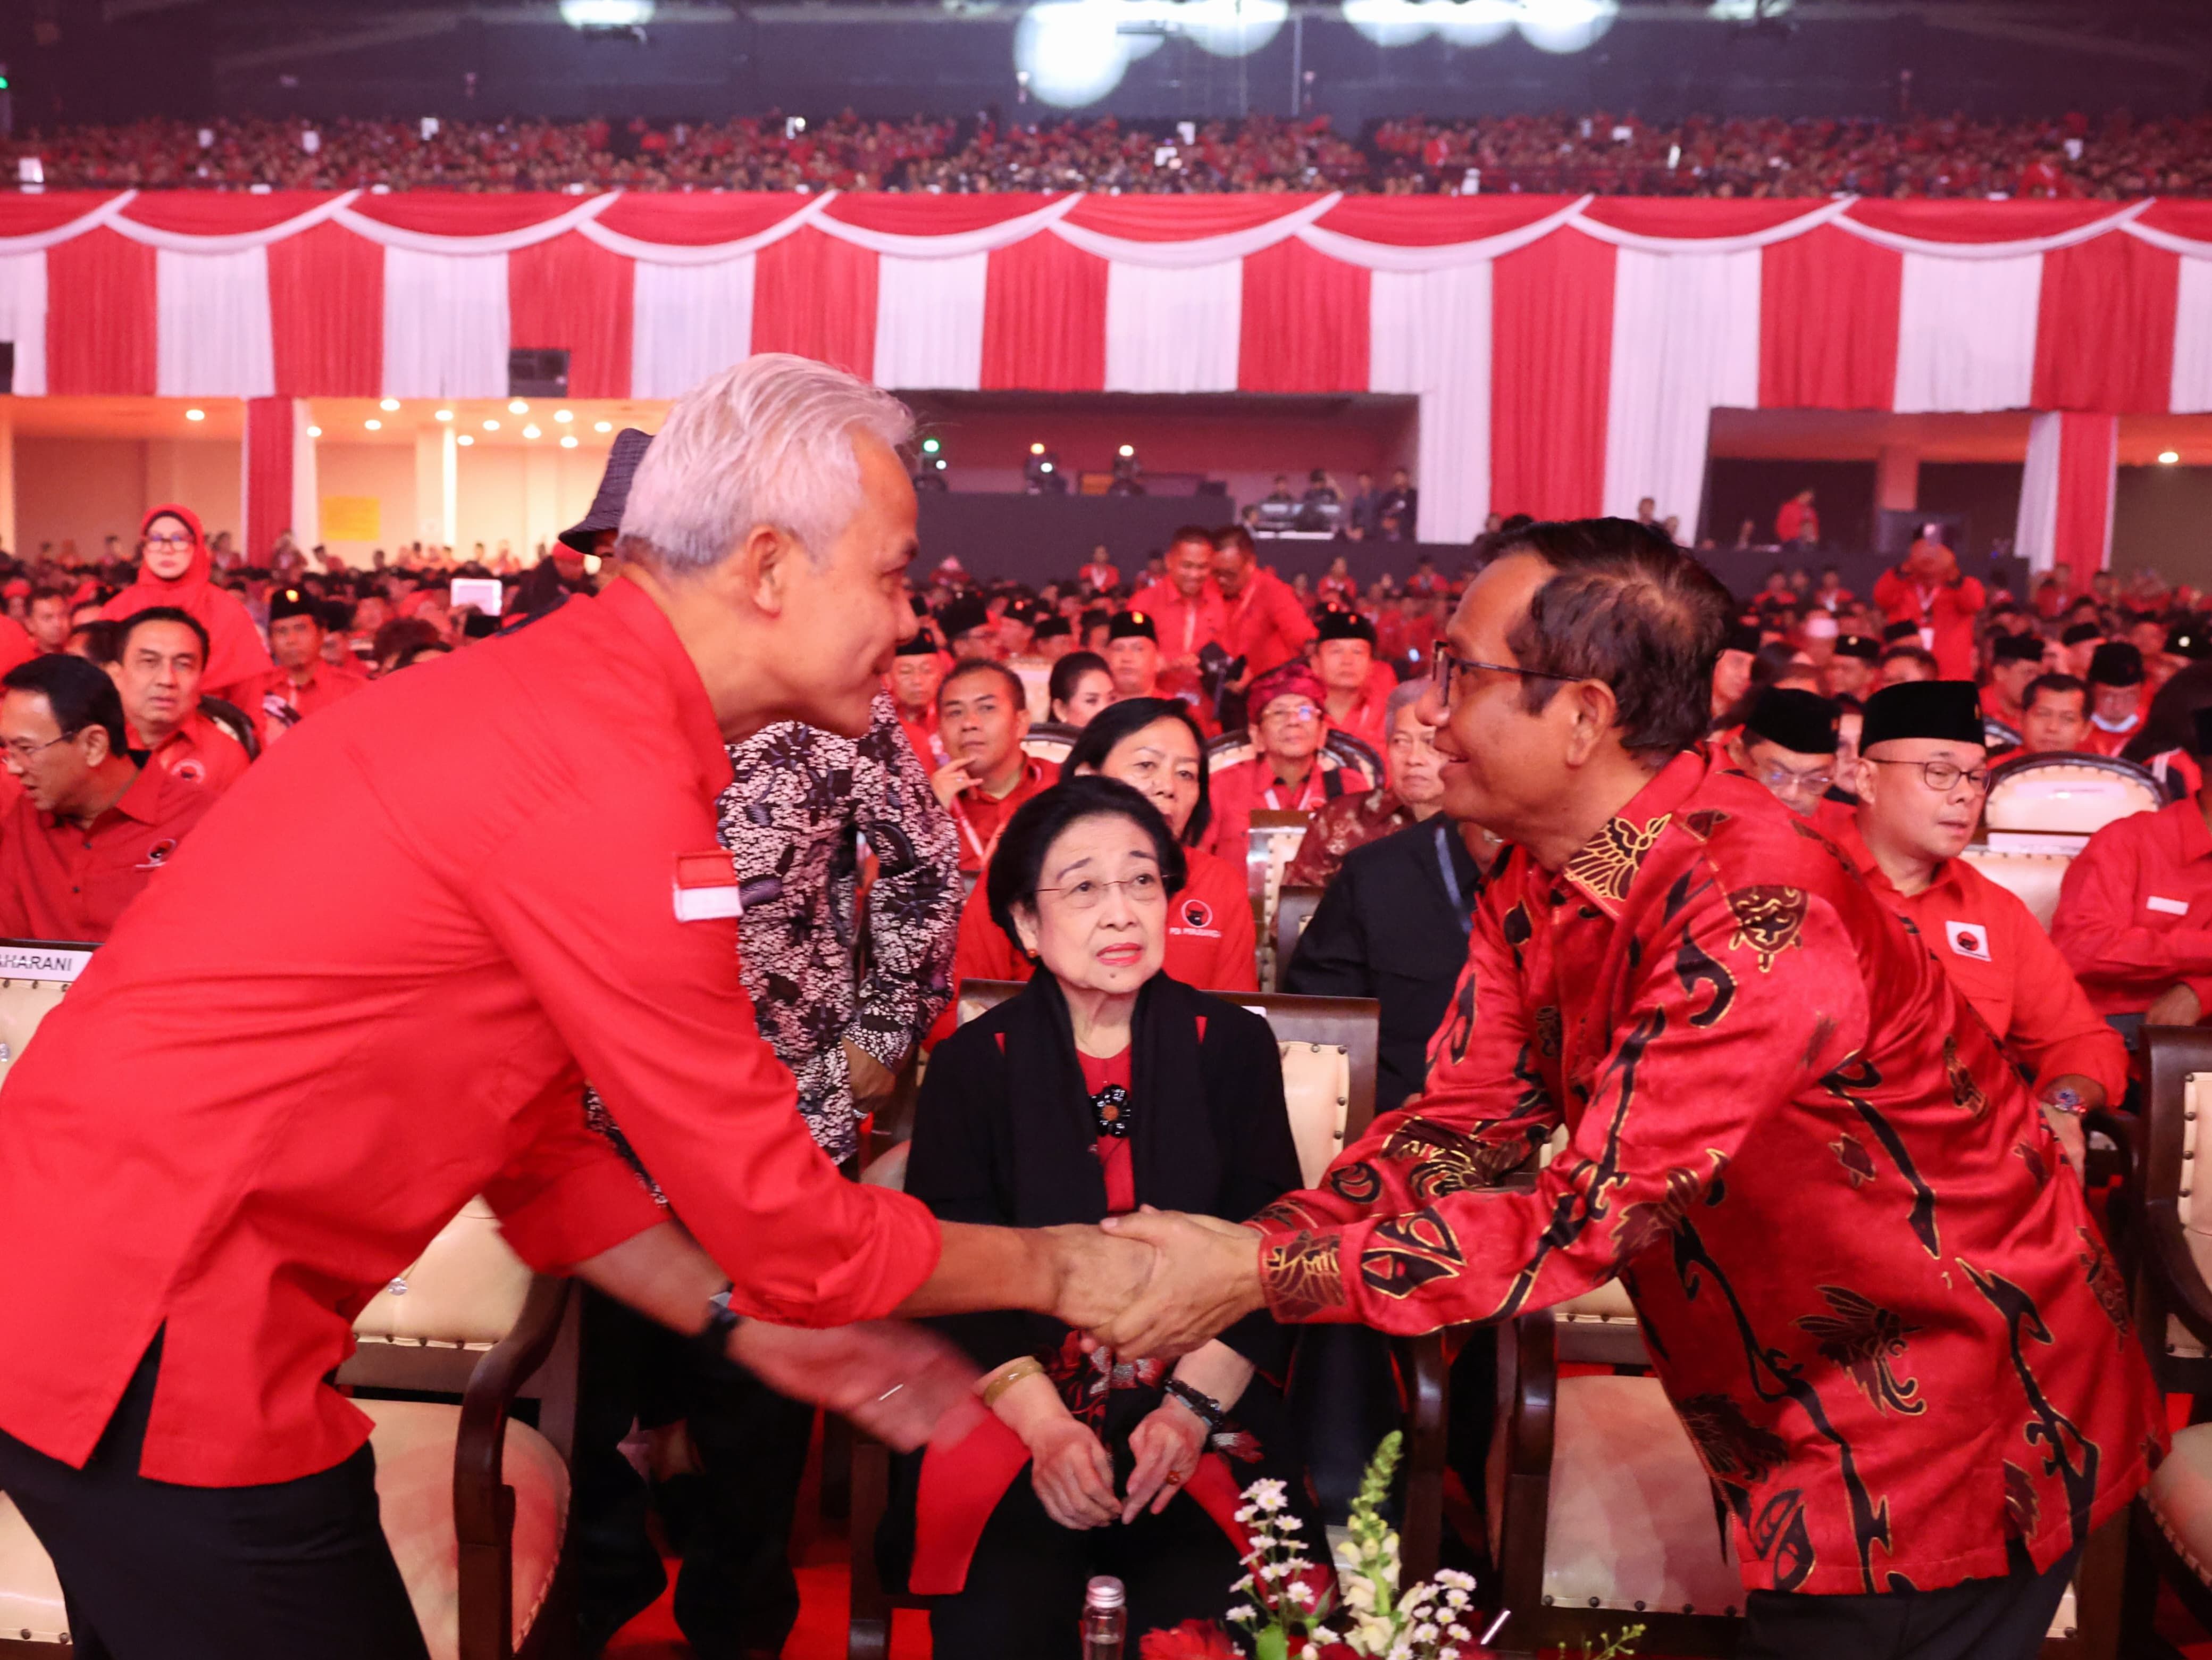 Tanpa Jokowi, Ini Sejumlah Menteri hingga Ketua Umum Partai yang Hadir di Rakernas PDI-P